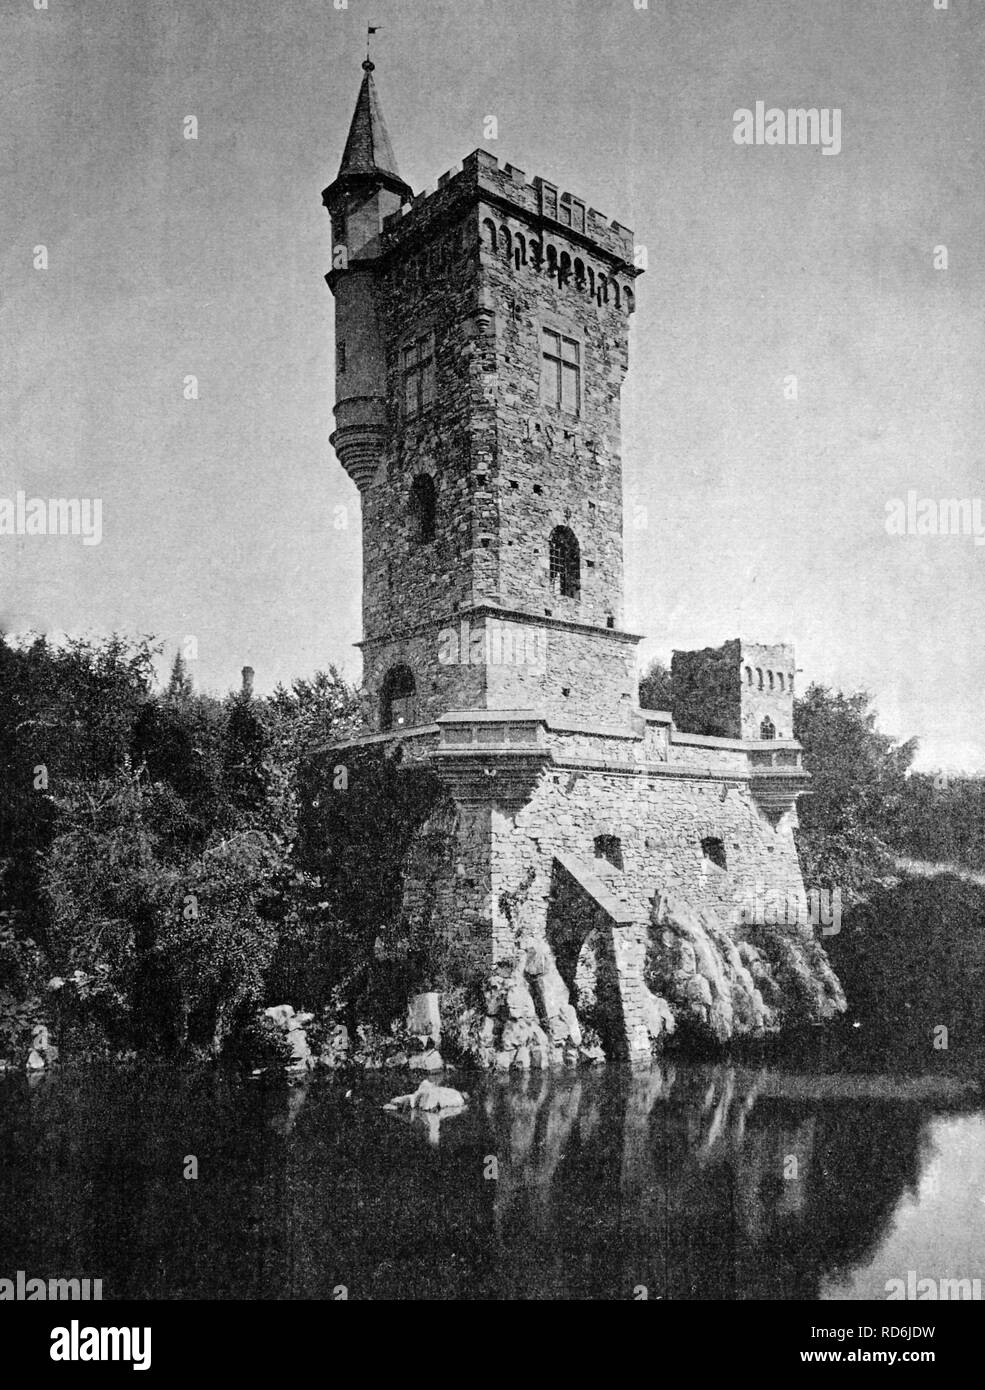 Au début de l'autotype Binger Maeuseturm tower, UNESCO World Heritage Site, Bingen am Rhein, Rhénanie-Palatinat, Allemagne Banque D'Images